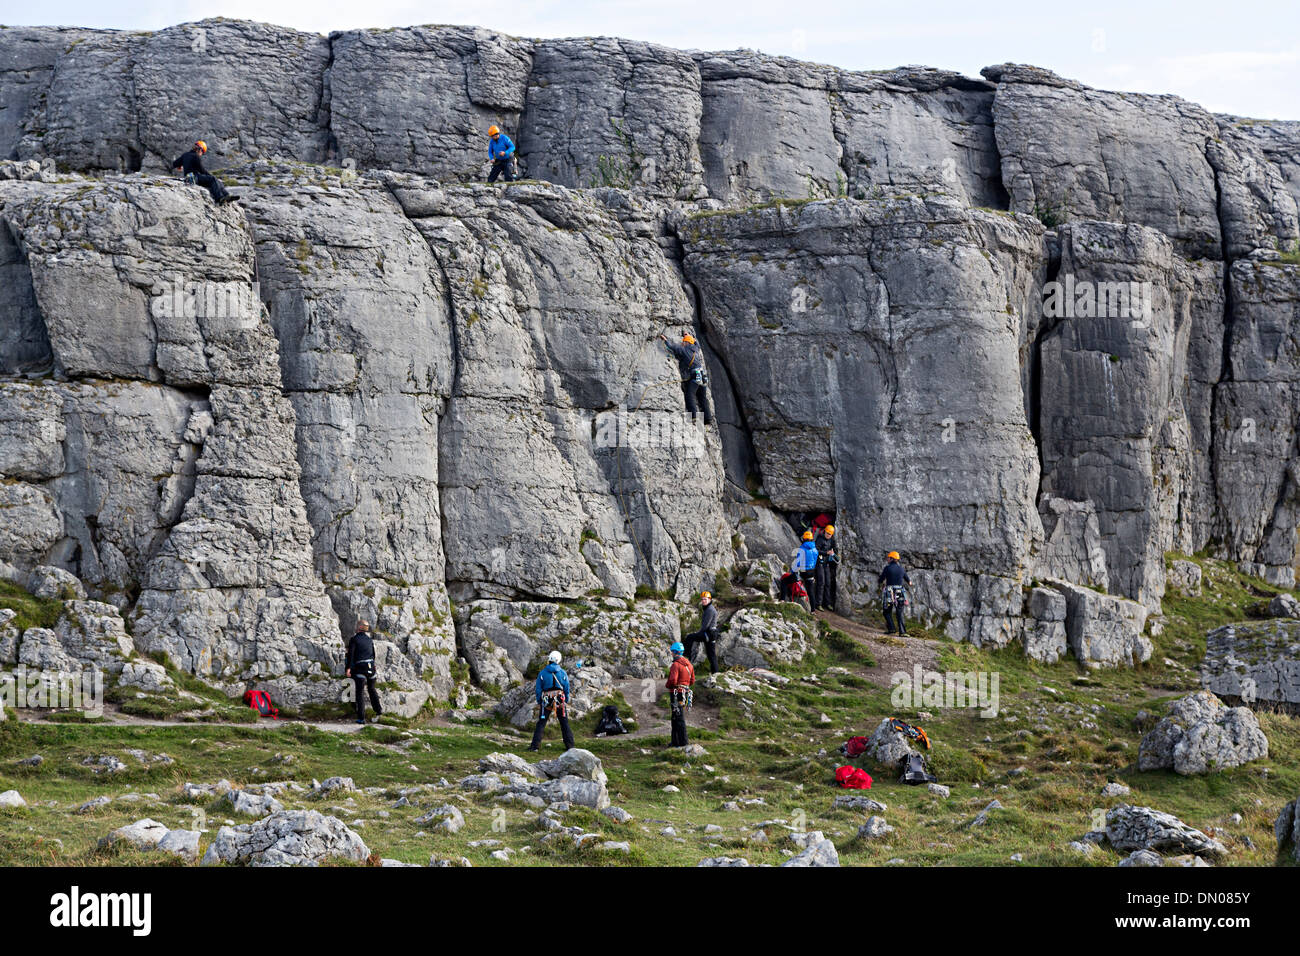 Klettern Abenteuer schulische Ausbildung an einer Felswand auf der Küste von Co. Clare, Irland Stockfoto